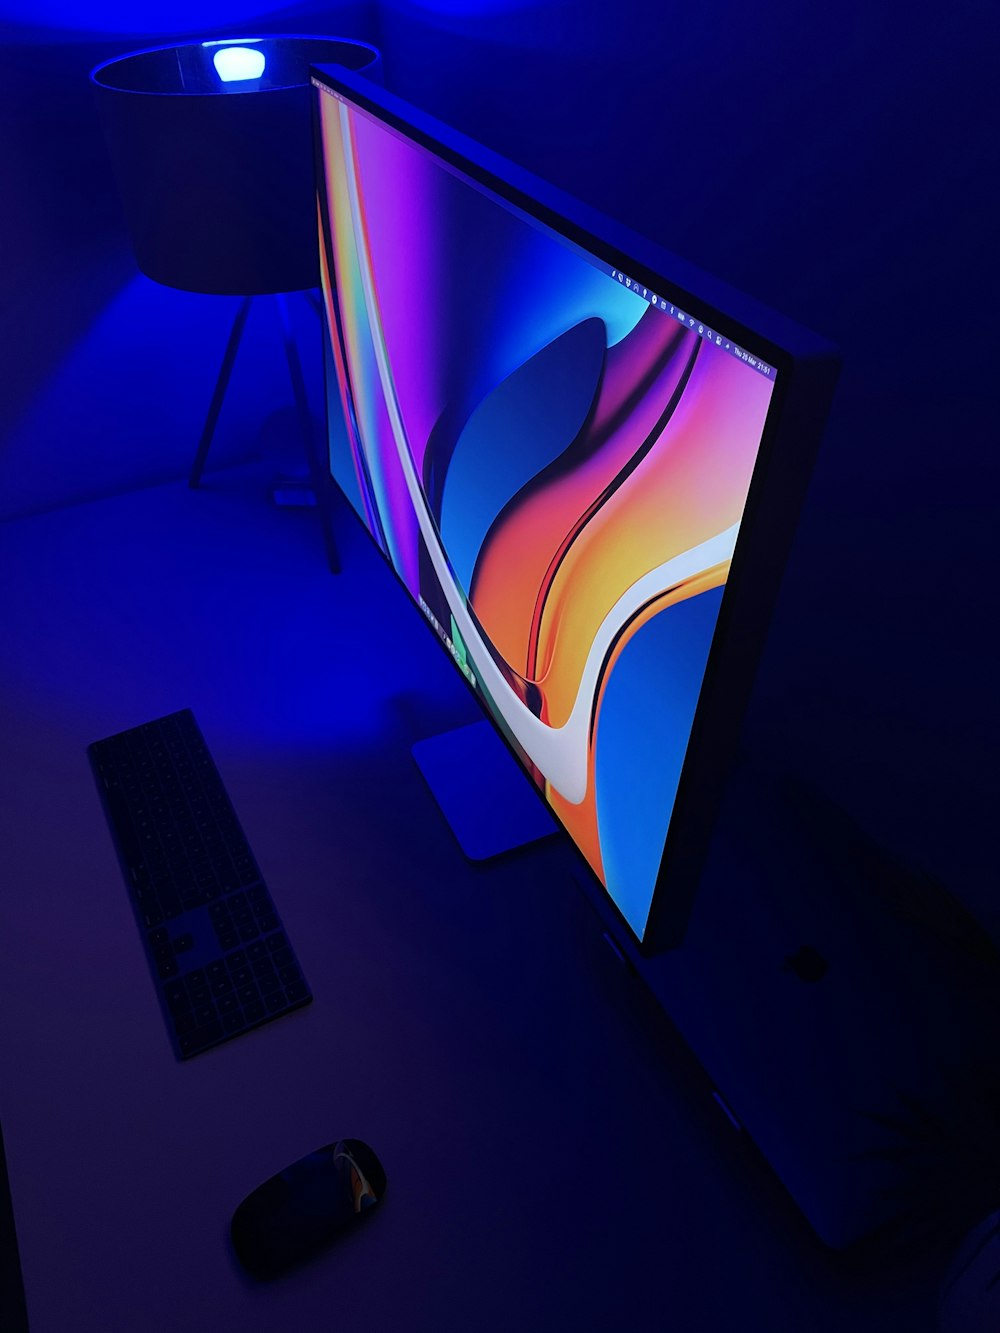 Téléviseur à écran plat noir allumé affichant du bleu et du rouge